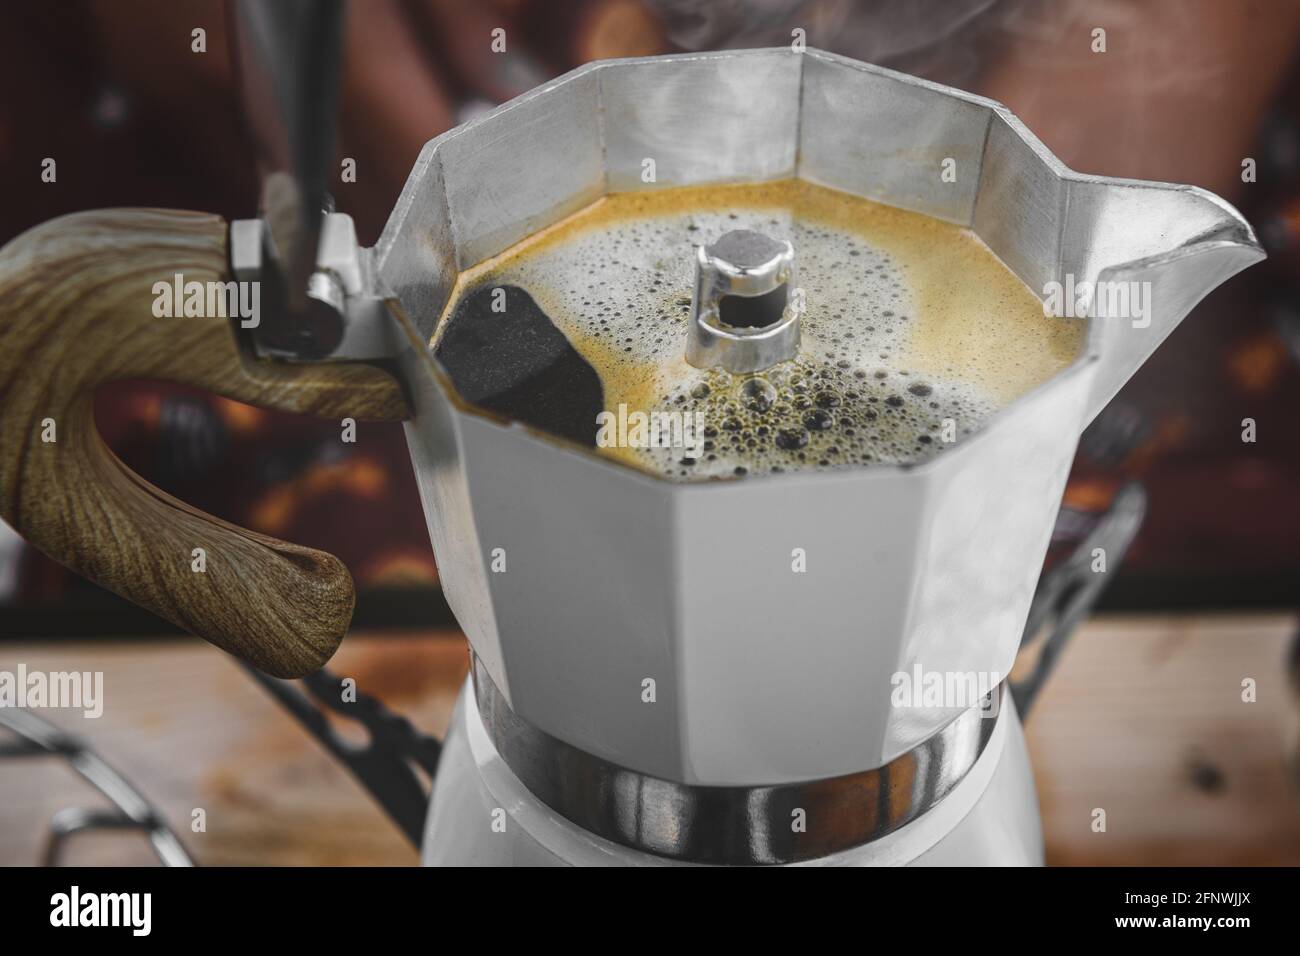 Cafetera italiana de moca sobre la estufa humeando vapor y aroma